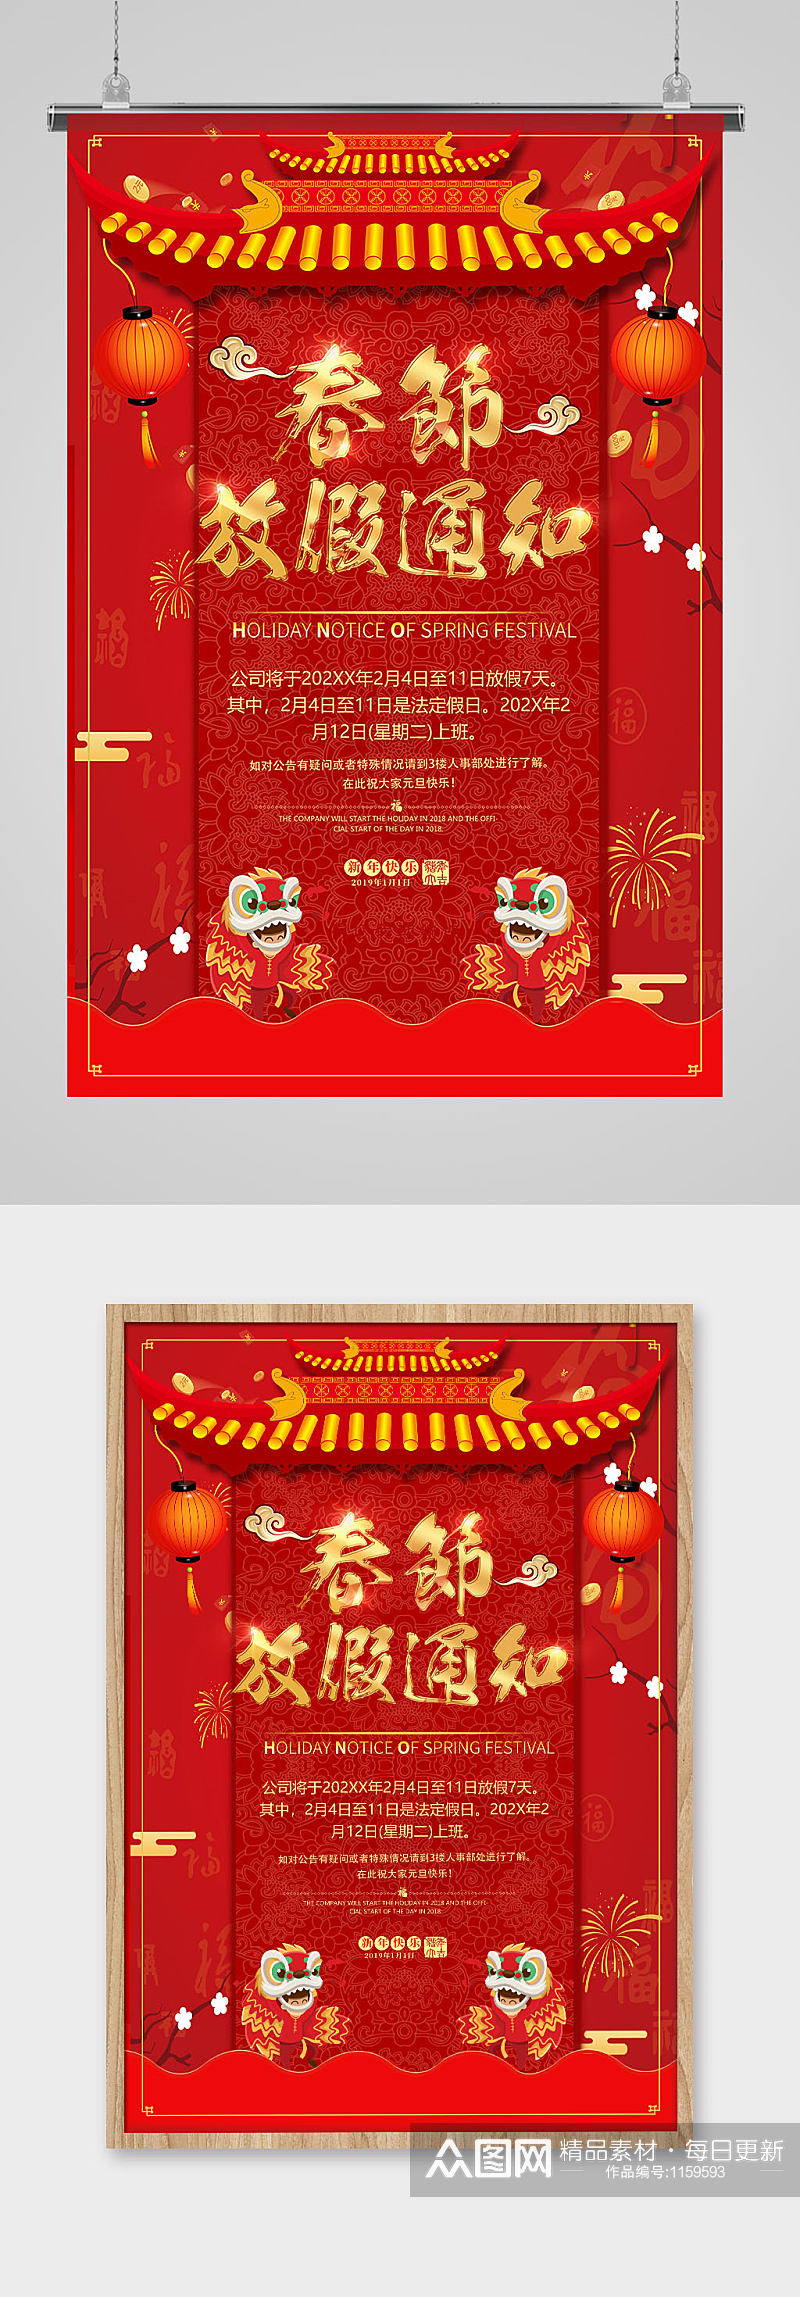 暗红色中国国潮插画舞狮子放假通知海报素材